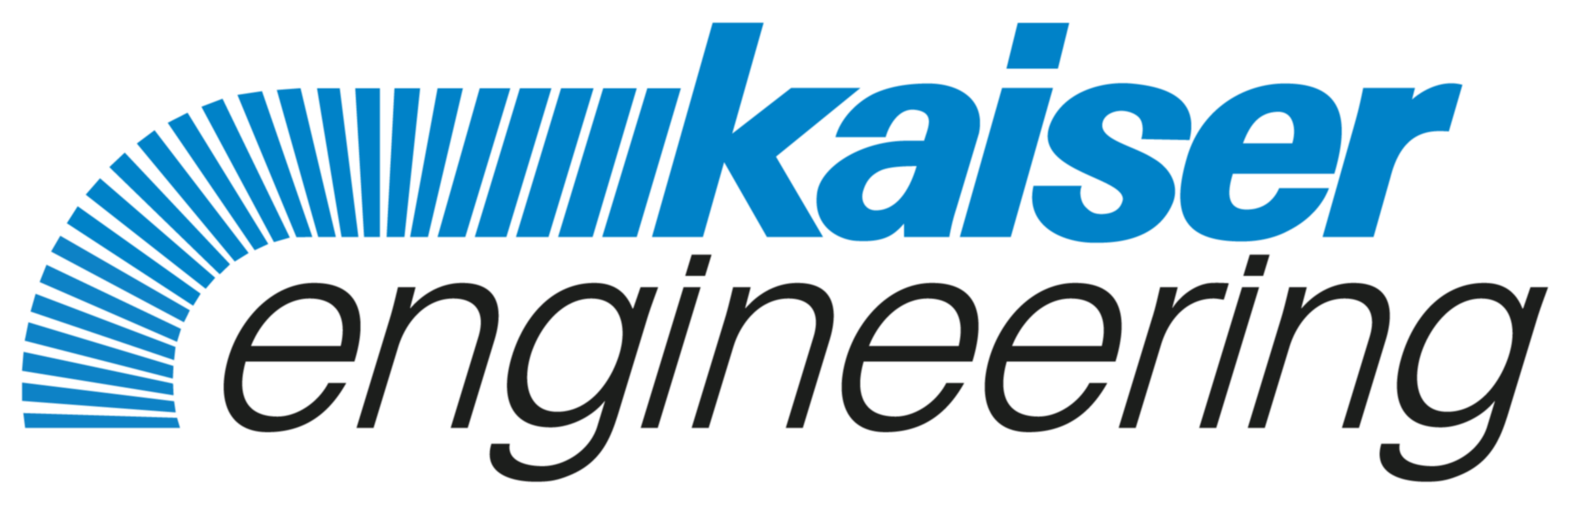 Kaiser engineering GmbH